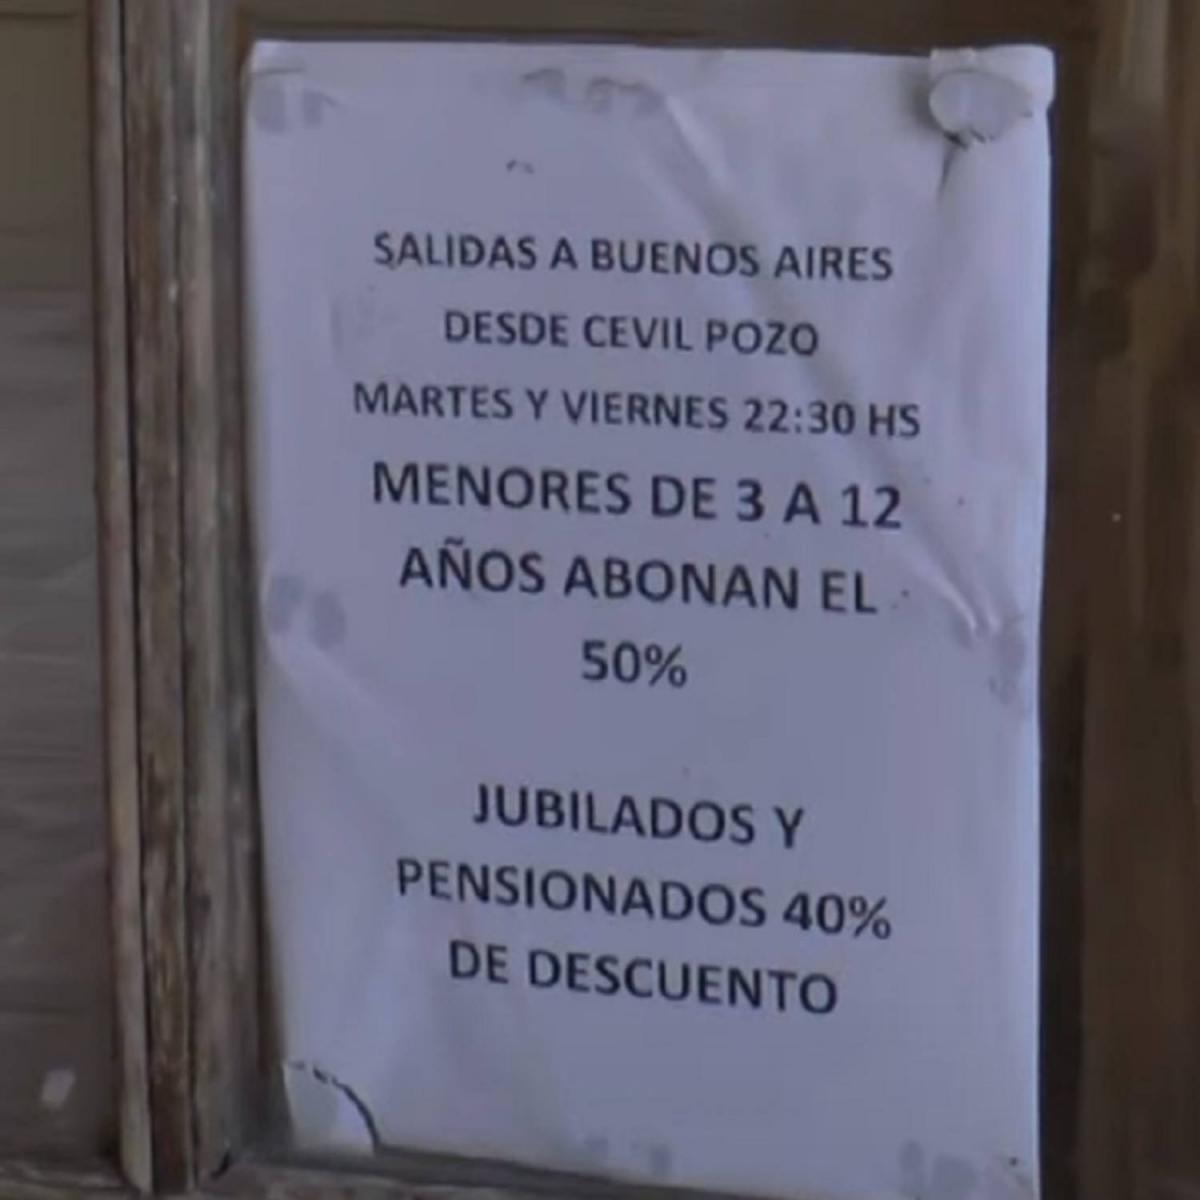 Desde hoy están a la venta los pasajes de trenes para unir Tucumán-Buenos Aires: ¿cuánto cuesta viajar en noviembre?